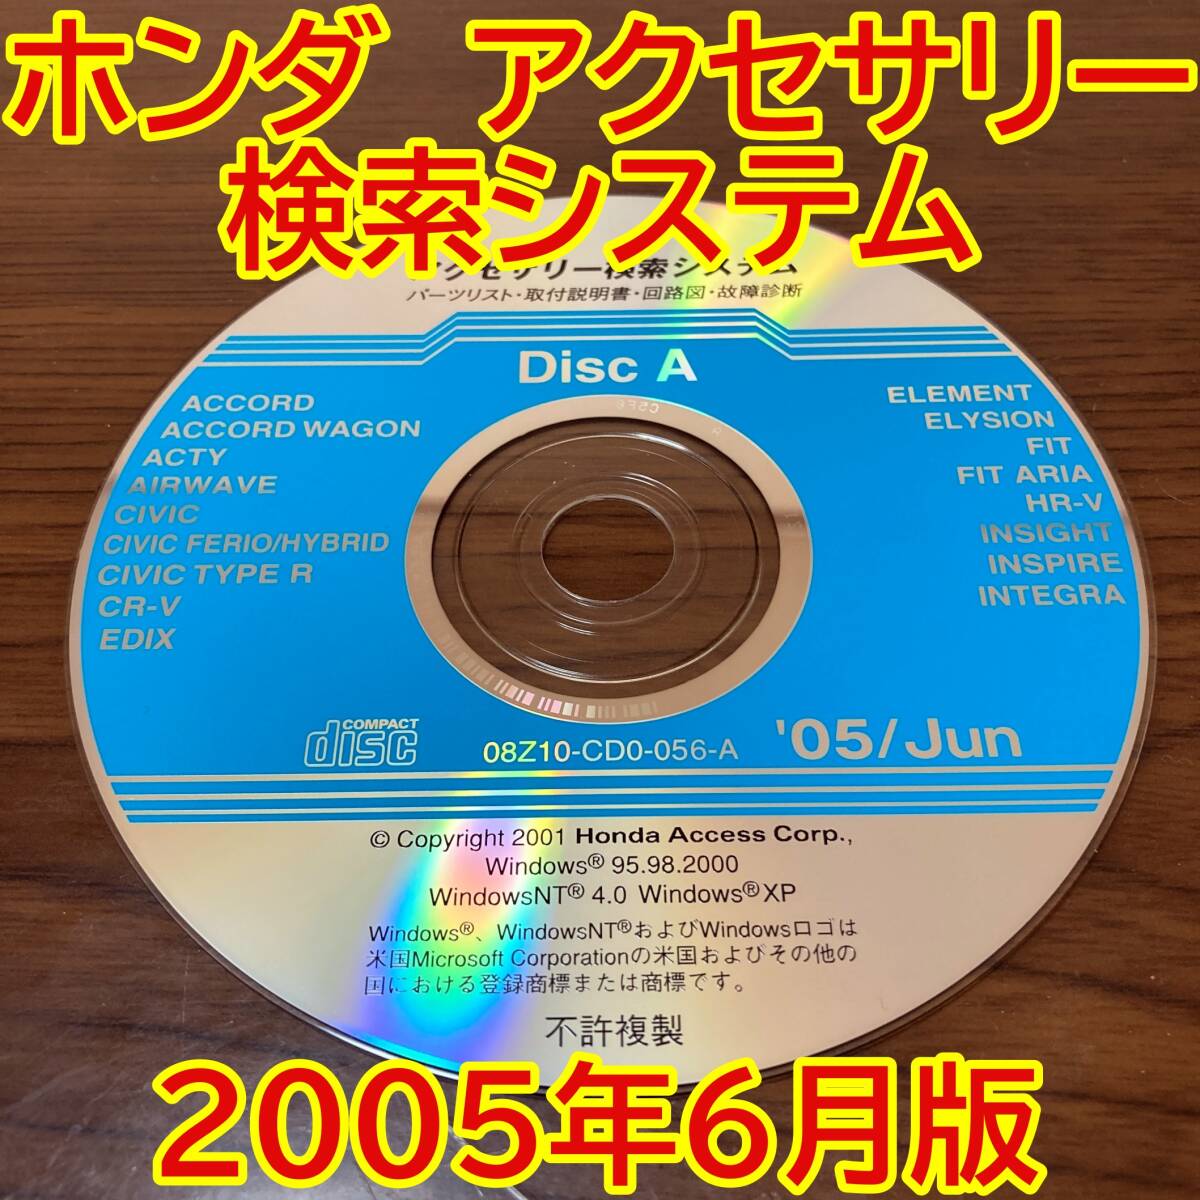 2005年6月版 ホンダ純正 アクセサリー検索システム Disc A 取付説明書 配線図 [H200]